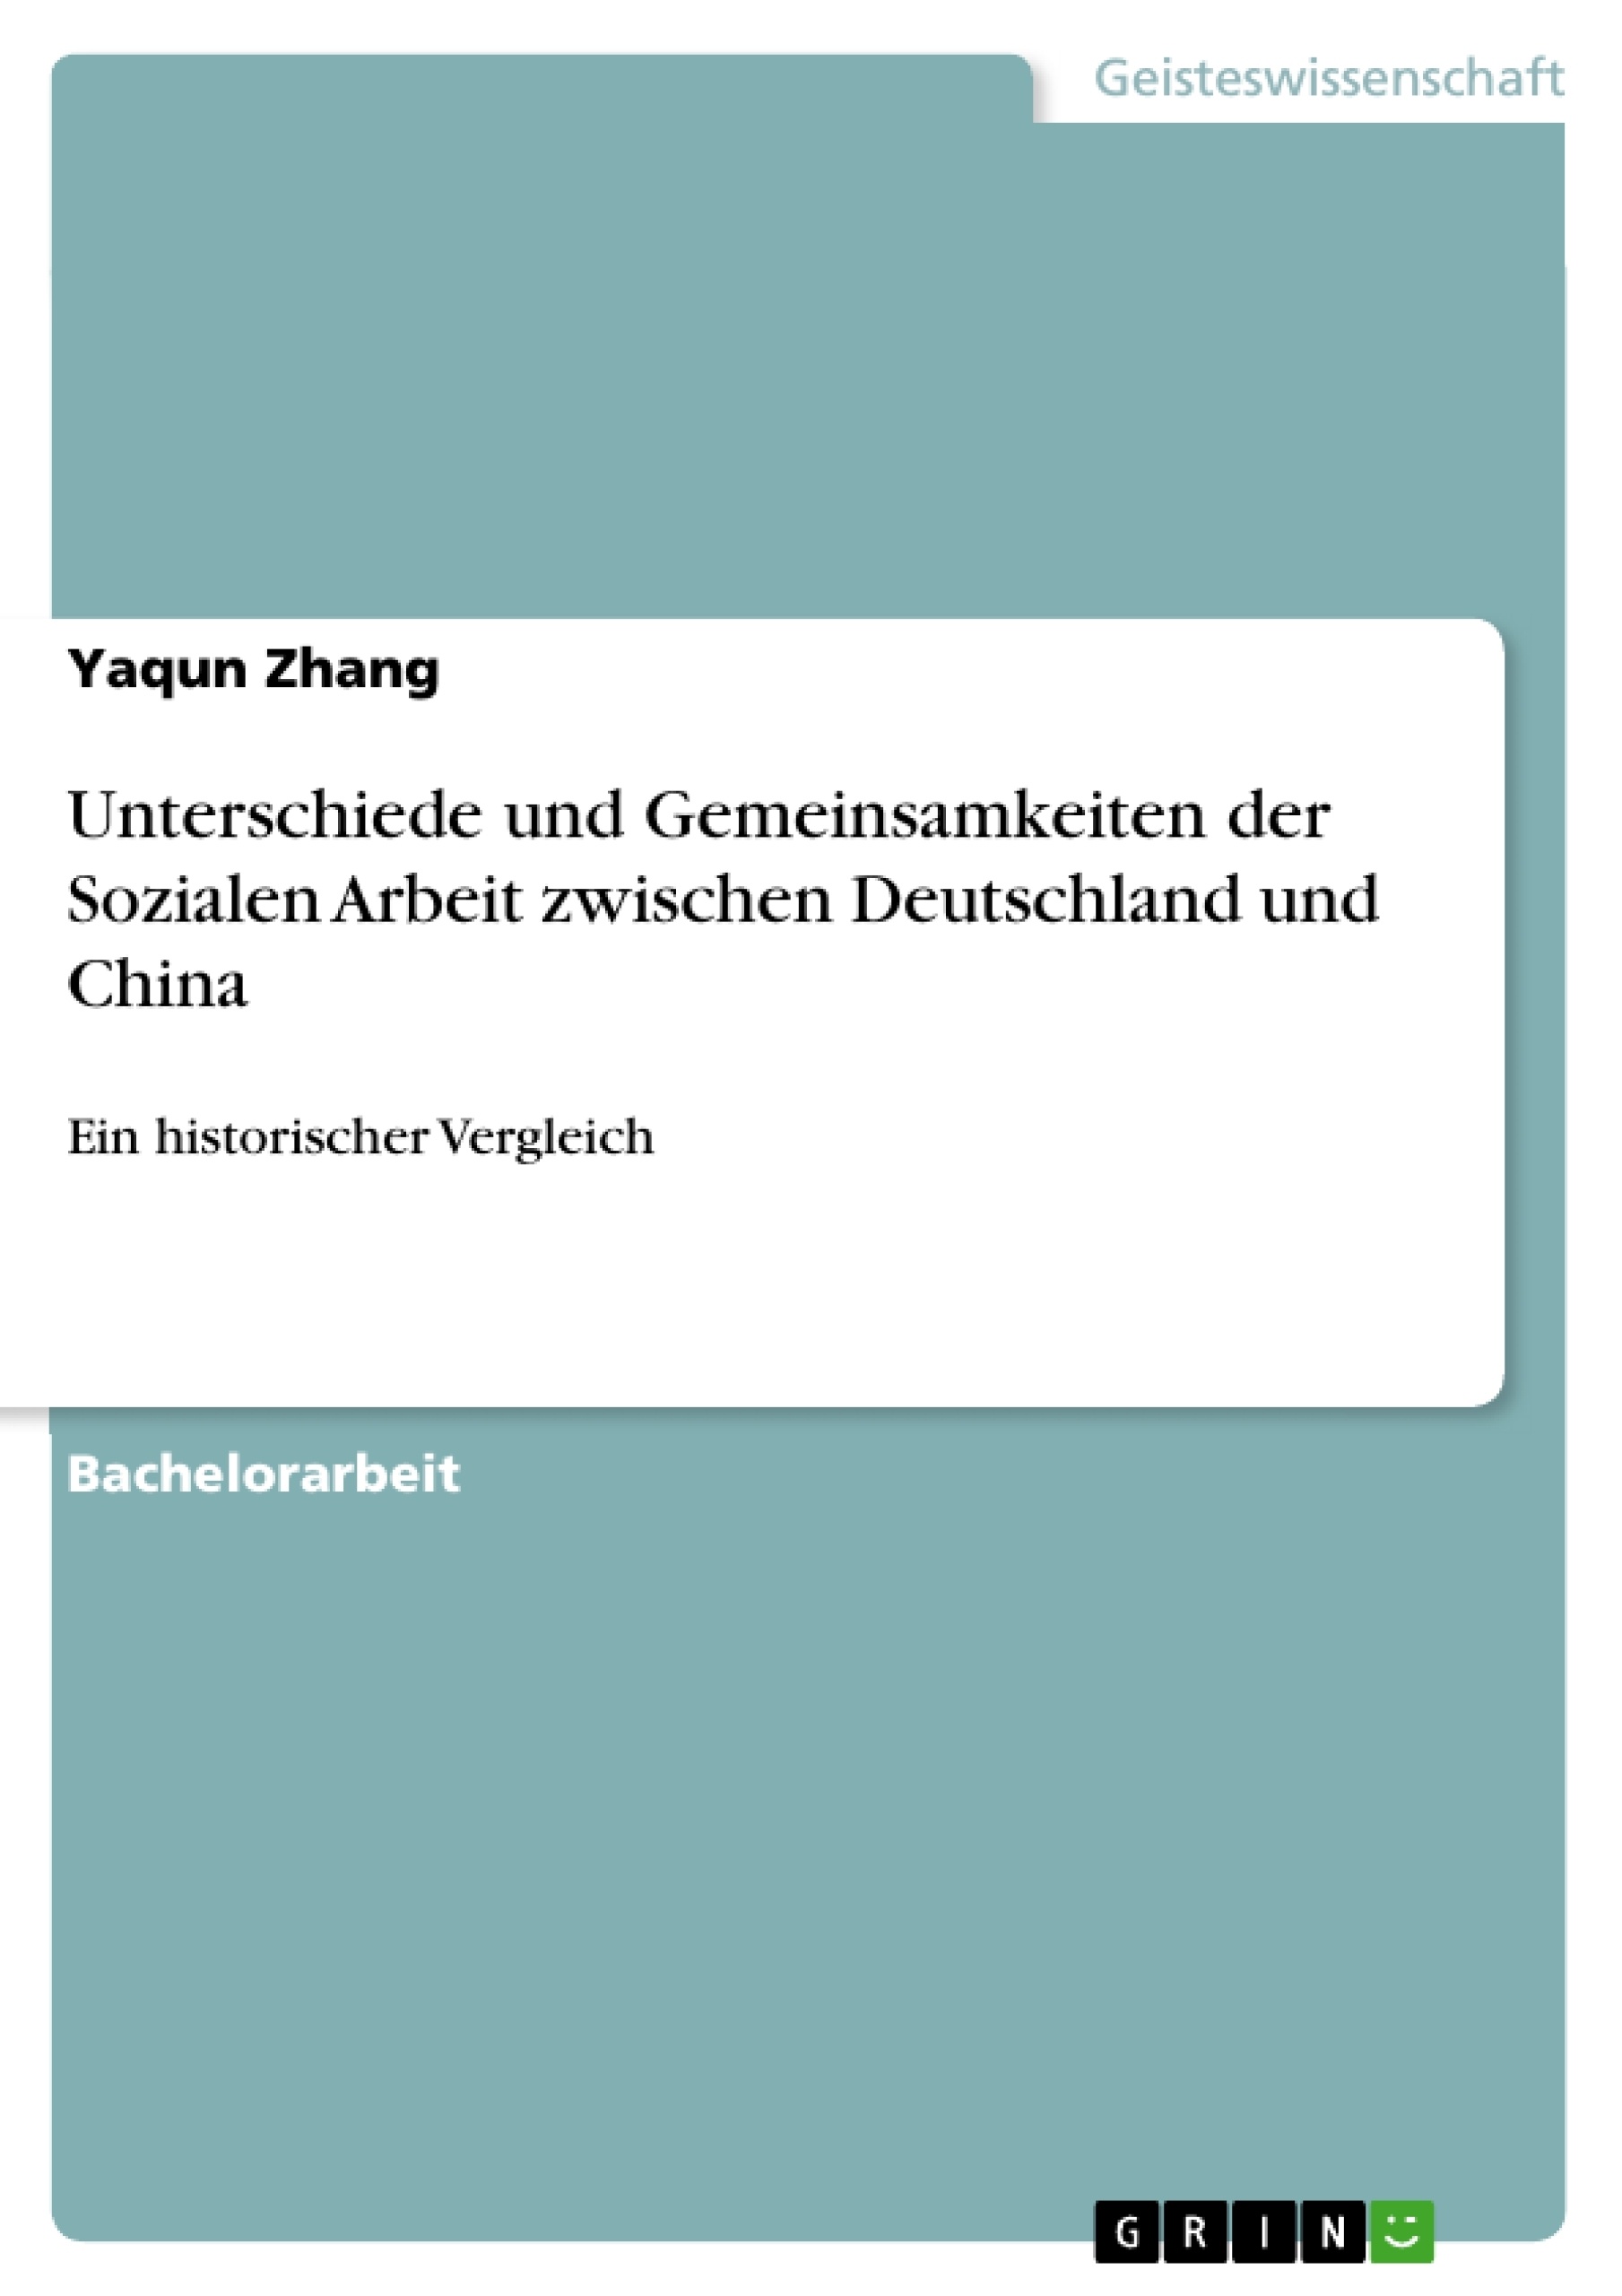 Título: Unterschiede und Gemeinsamkeiten der Sozialen Arbeit zwischen Deutschland und China